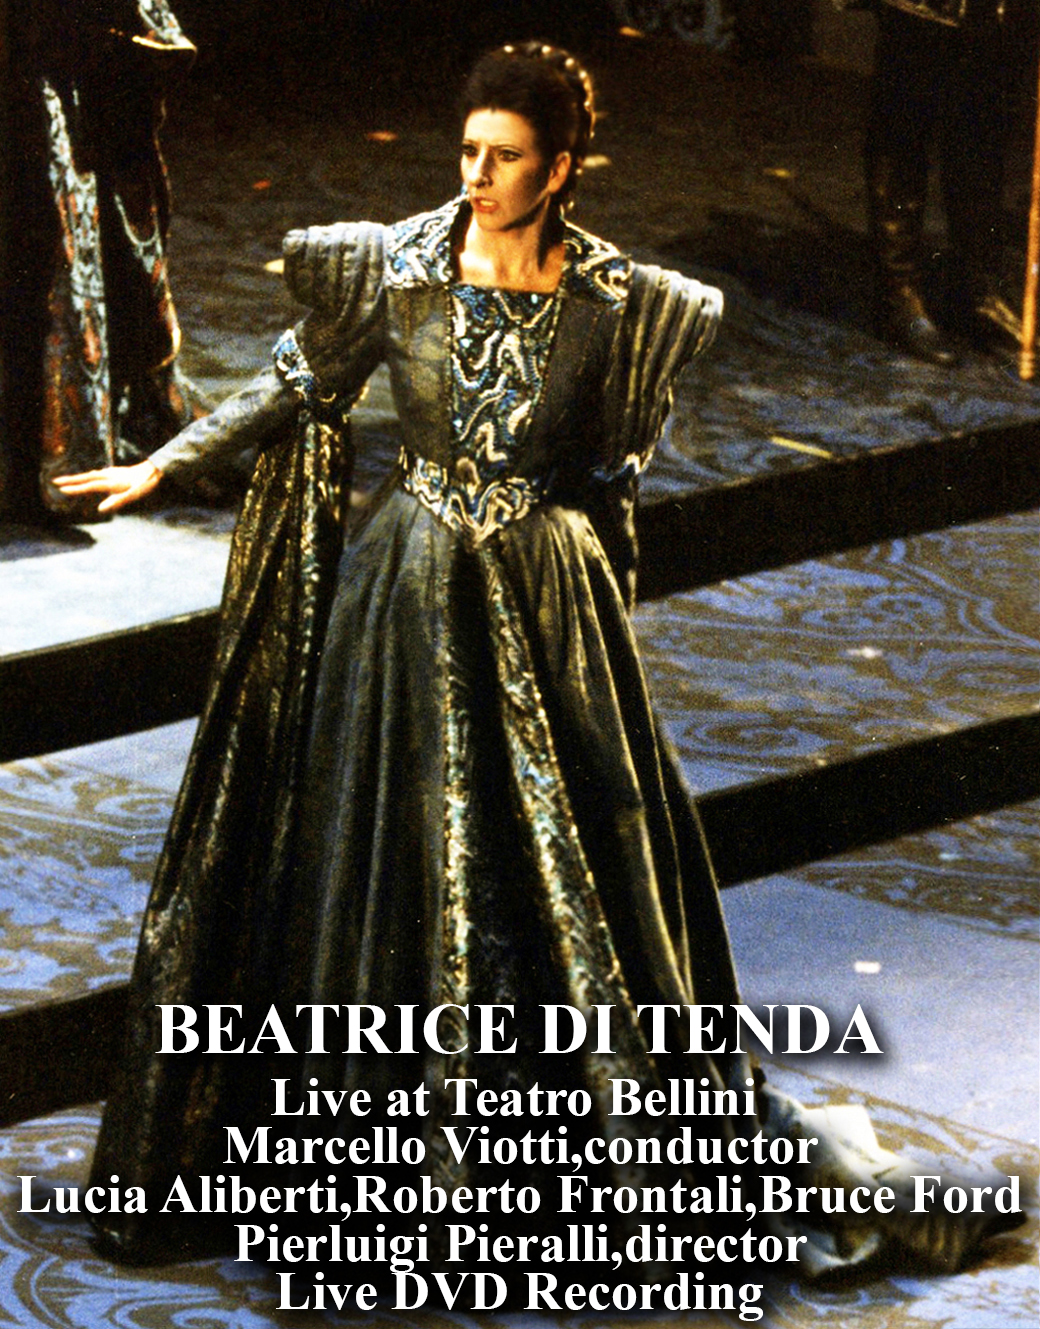 Lucia Aliberti with Roberto Frontali and Bruce Ford⚘Live DVD Recording⚘Beatrice di Tenda⚘Opera⚘Marcello Viotti conductor⚘Pierluigi Pieralli director⚘Teatro Bellini⚘Catania⚘:http://www.luciaaliberti.it #luciaaliberti #robertofrontali #bruceford #marcelloviotti #pierluigipieralli #teatrobellini #beatriceditenda #opera #catania